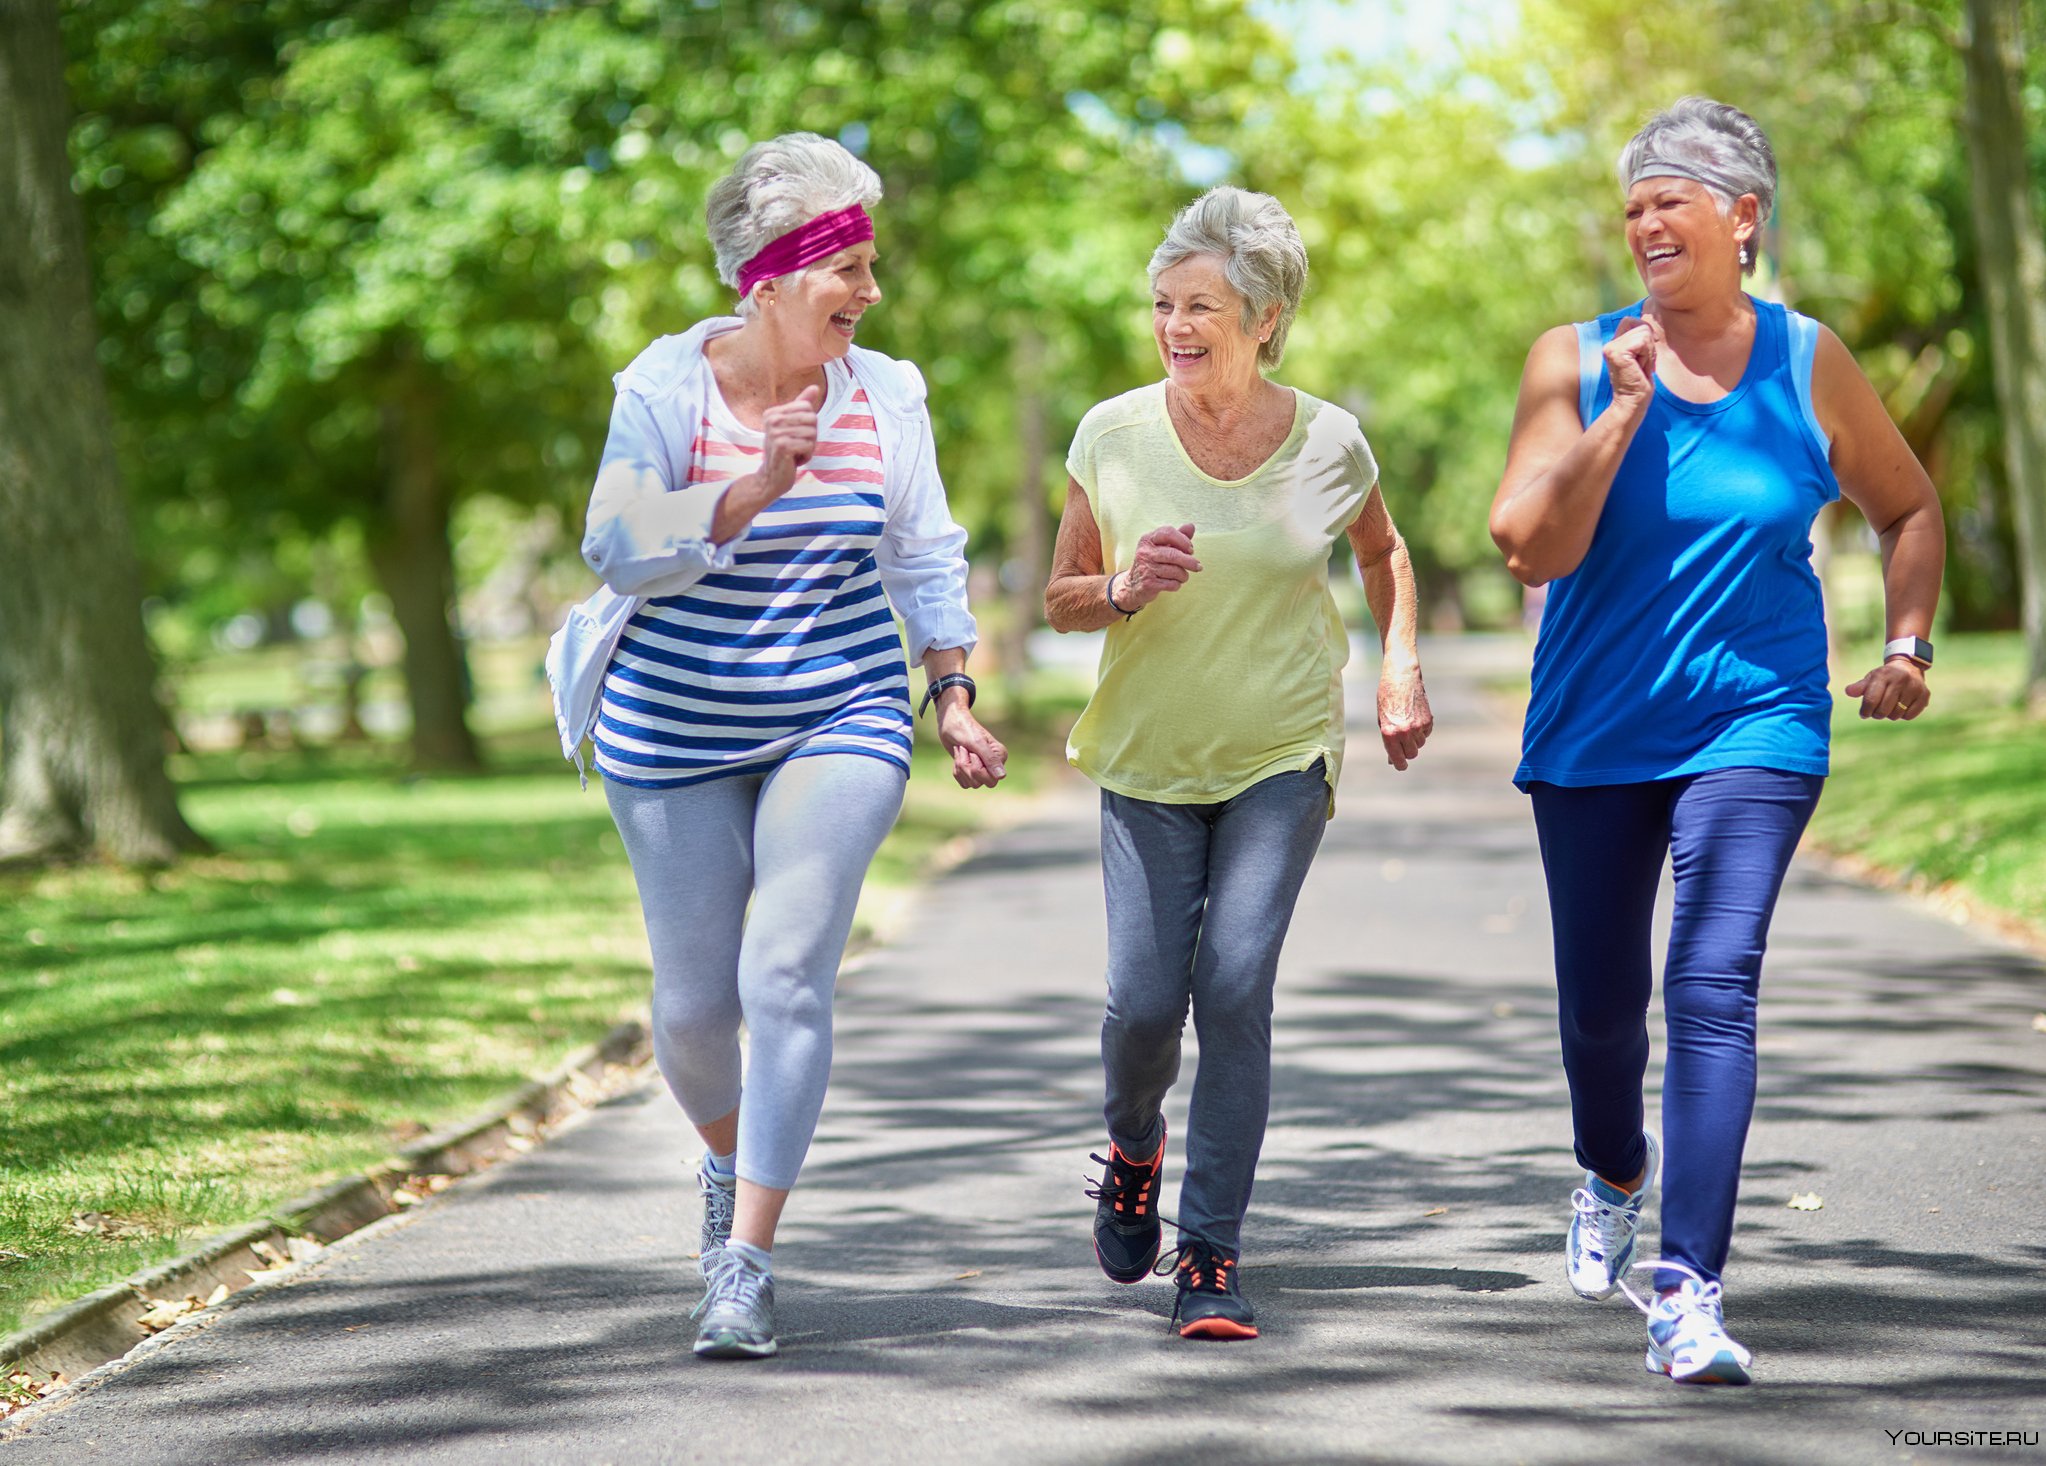 Ходьба полезнее бега. Активный образ жизни. Здоровый образ жизни для пожилых людей. Пенсионеры активный образ жизни. Пожилые люди спорт.